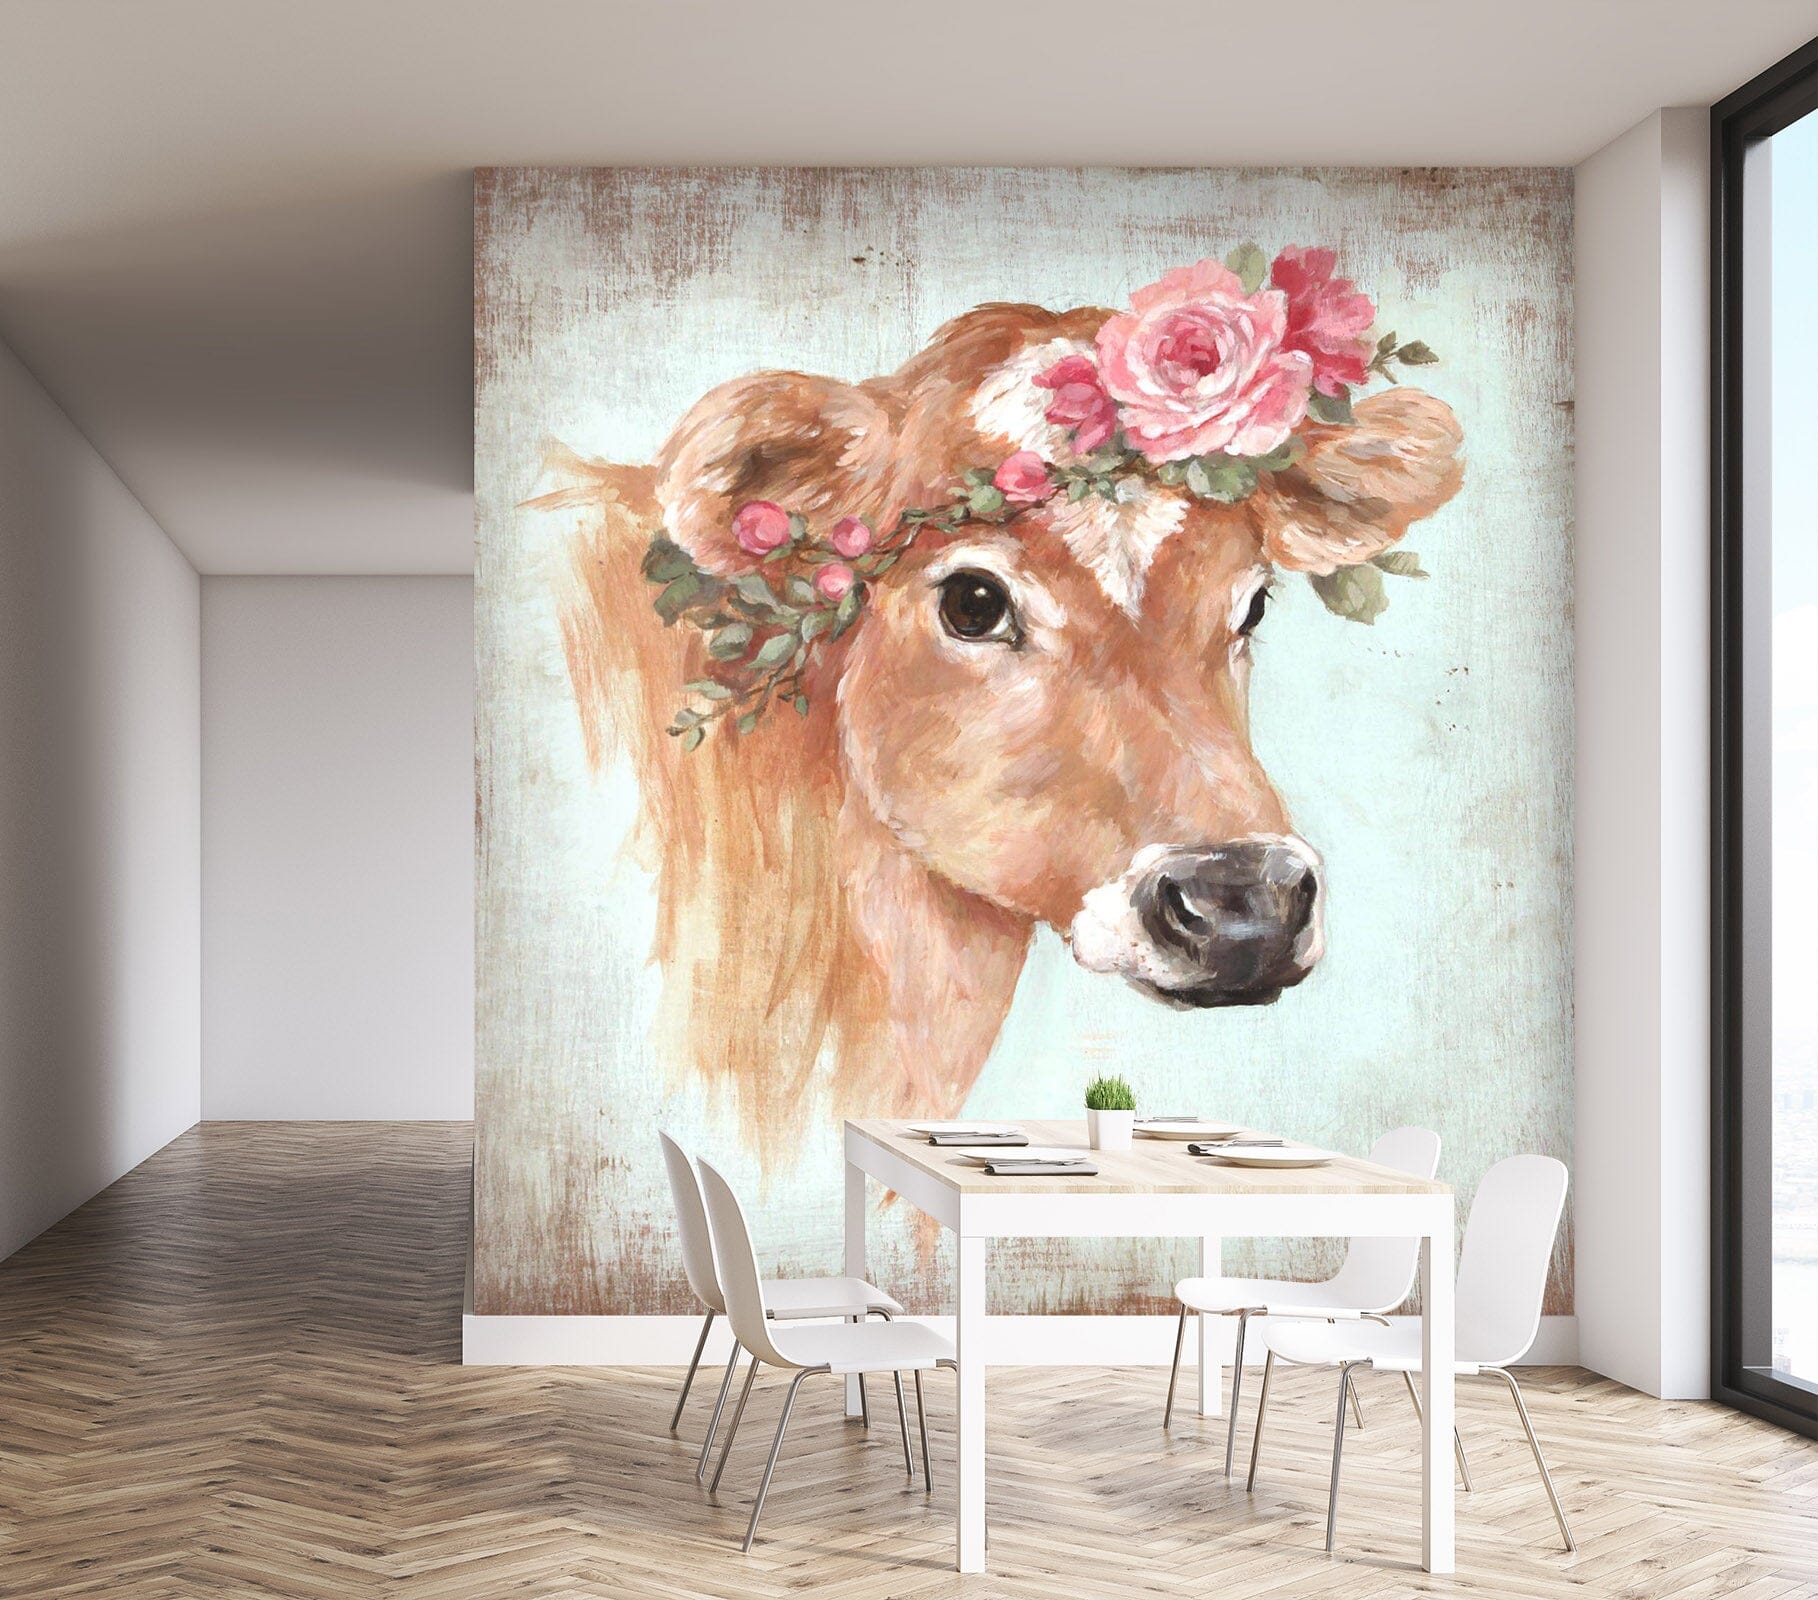 3D Cow Rose 1410 Debi Coules Wall Mural Wall Murals Wallpaper AJ Wallpaper 2 